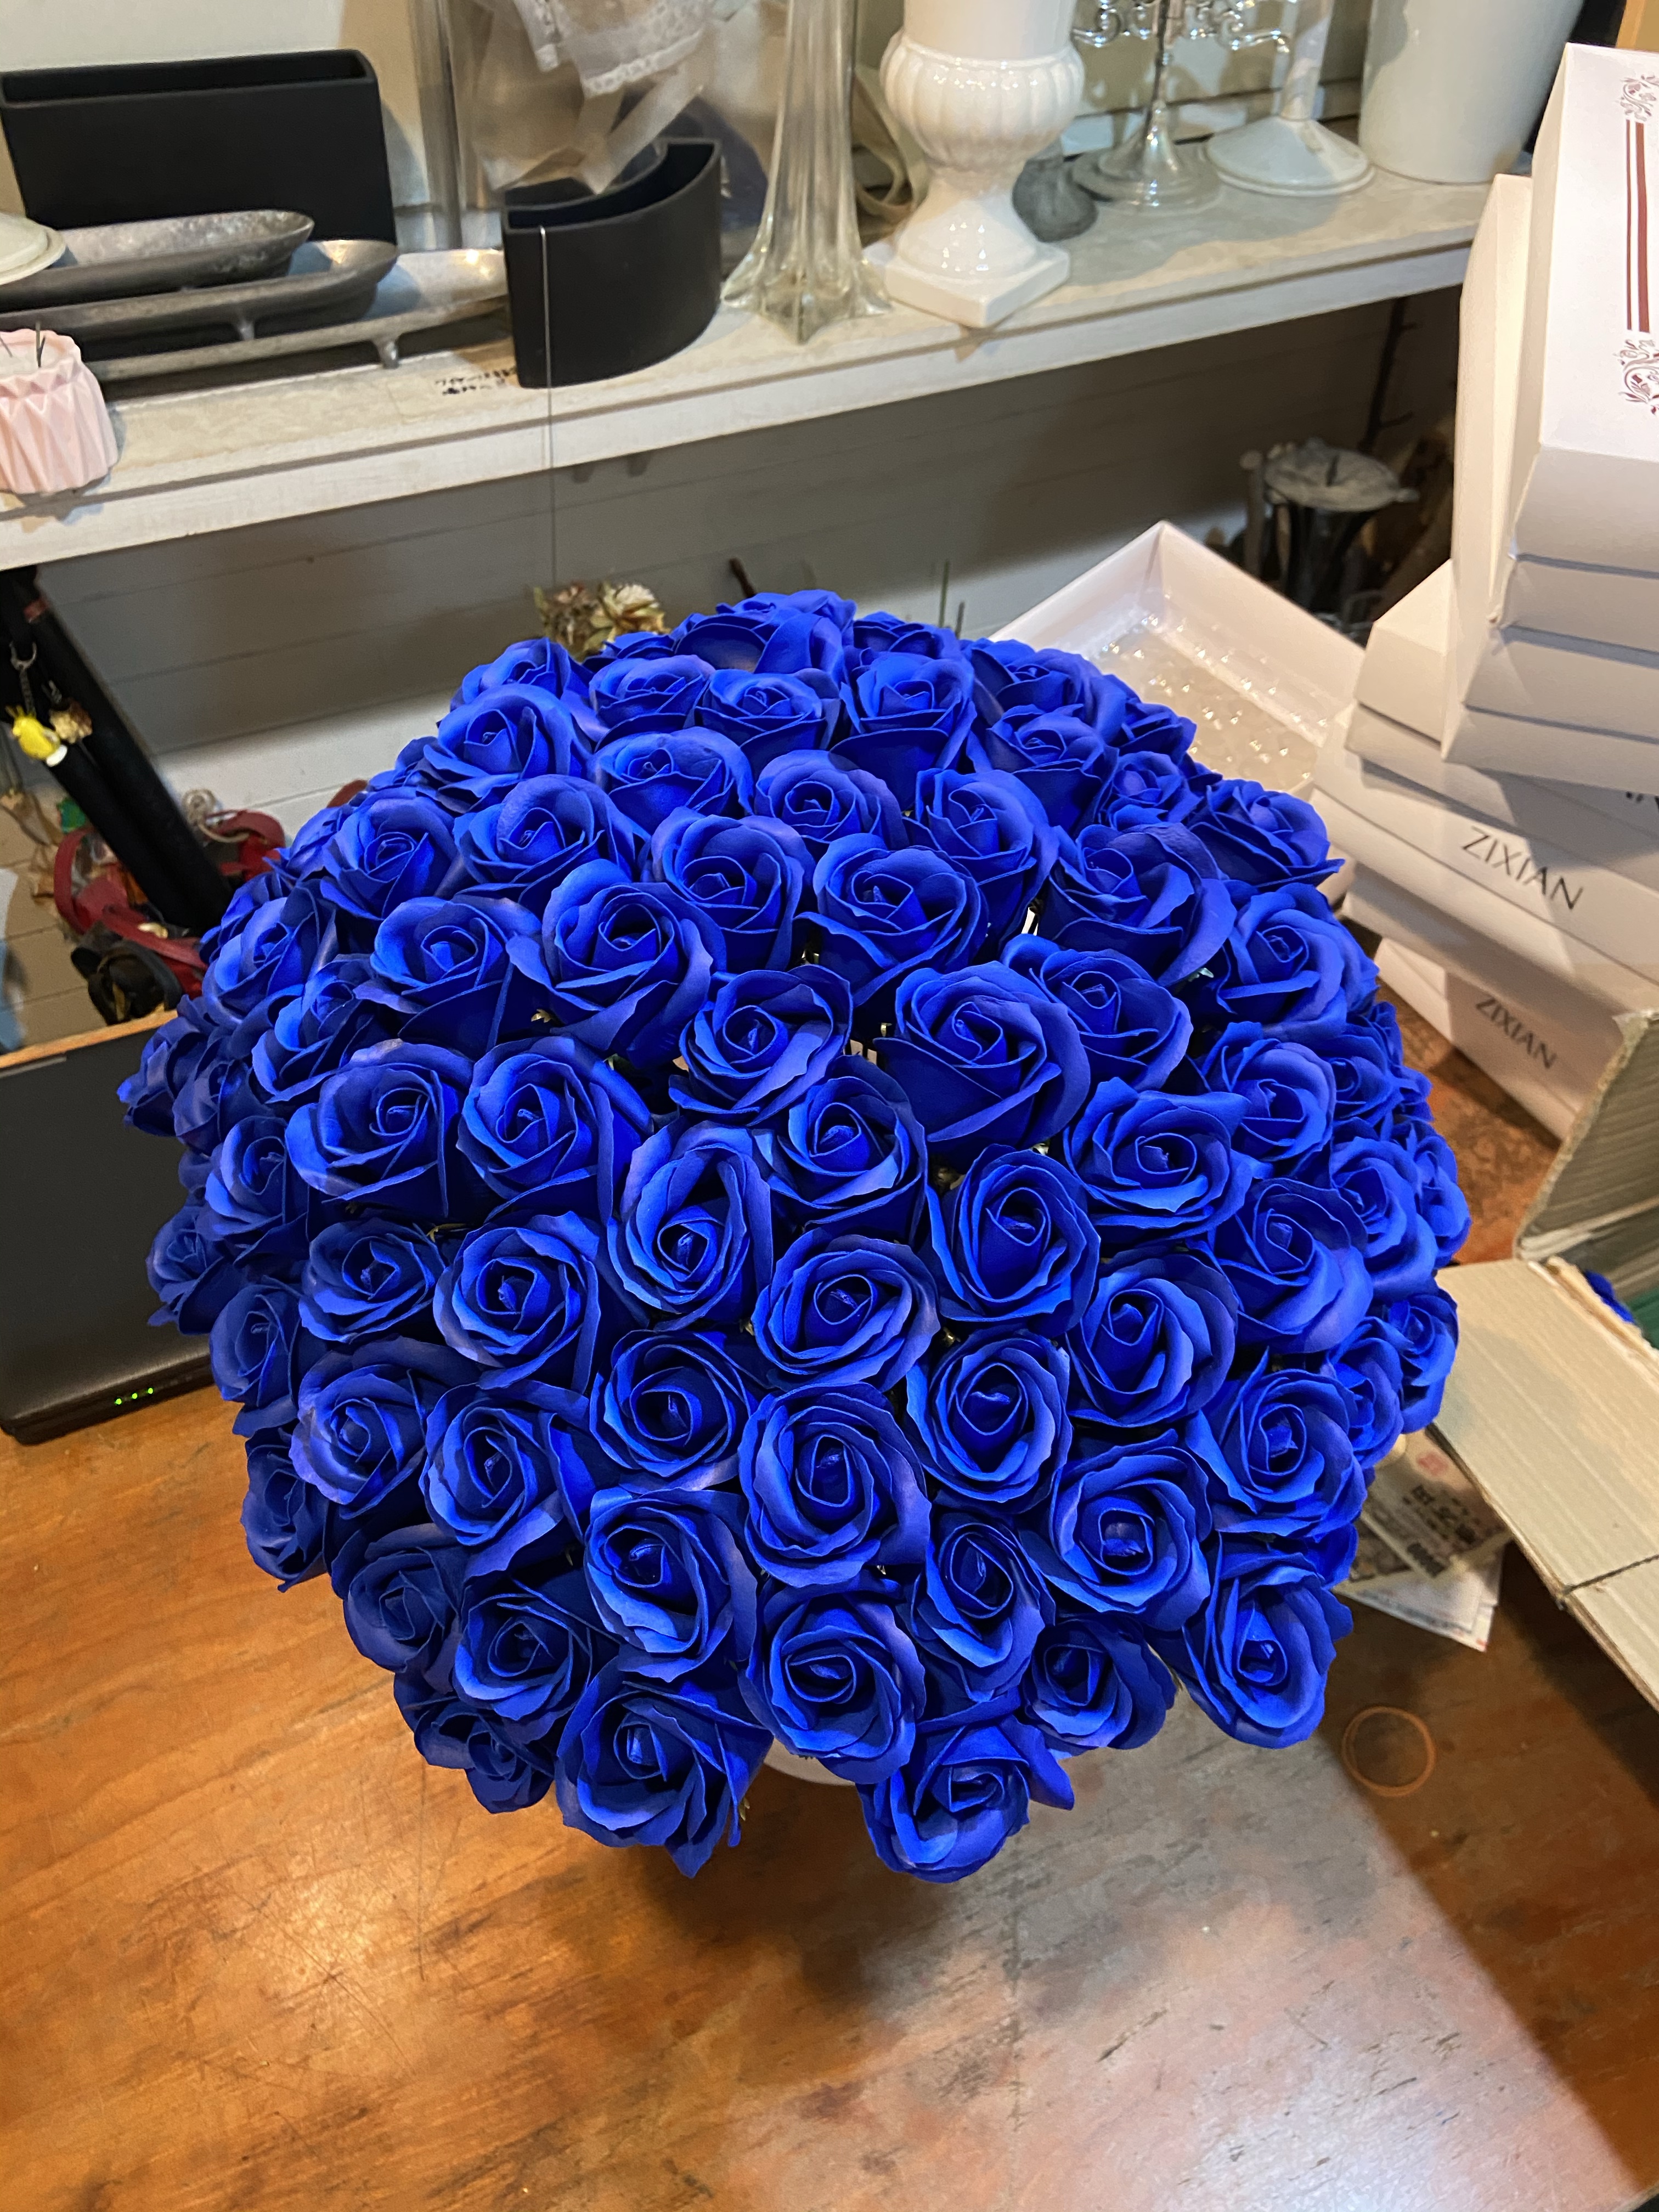 ソープフラワー 青バラ 100本 銀座 阿佐ヶ谷の花屋 Avail アヴェール